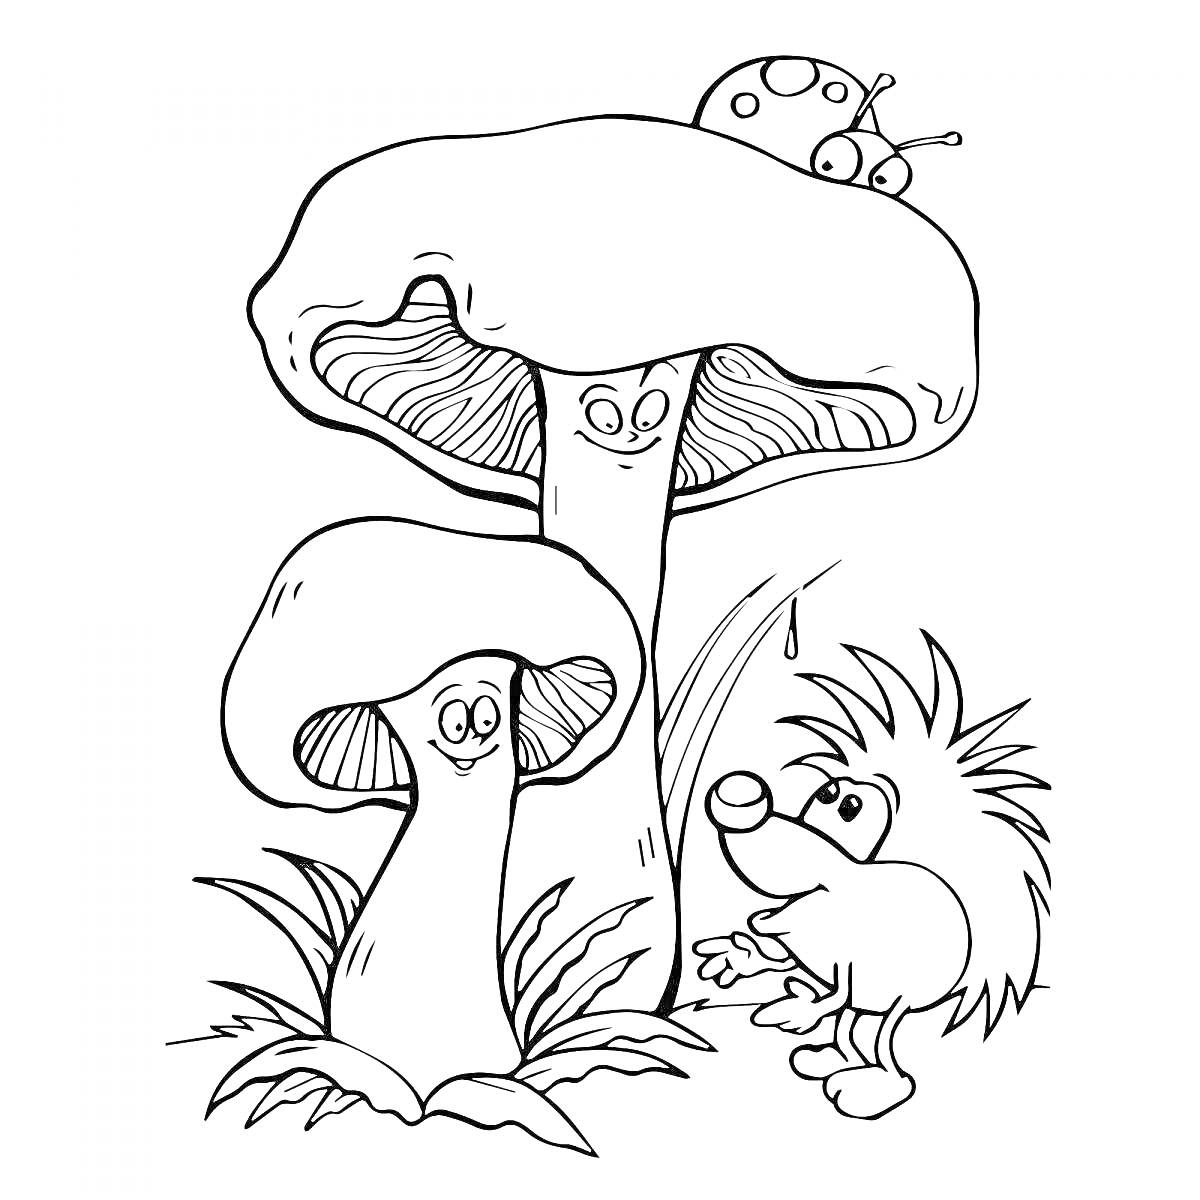 Раскраска Два гриба с глазами и улыбками, божья коровка на одном грибе, ёжик рядом